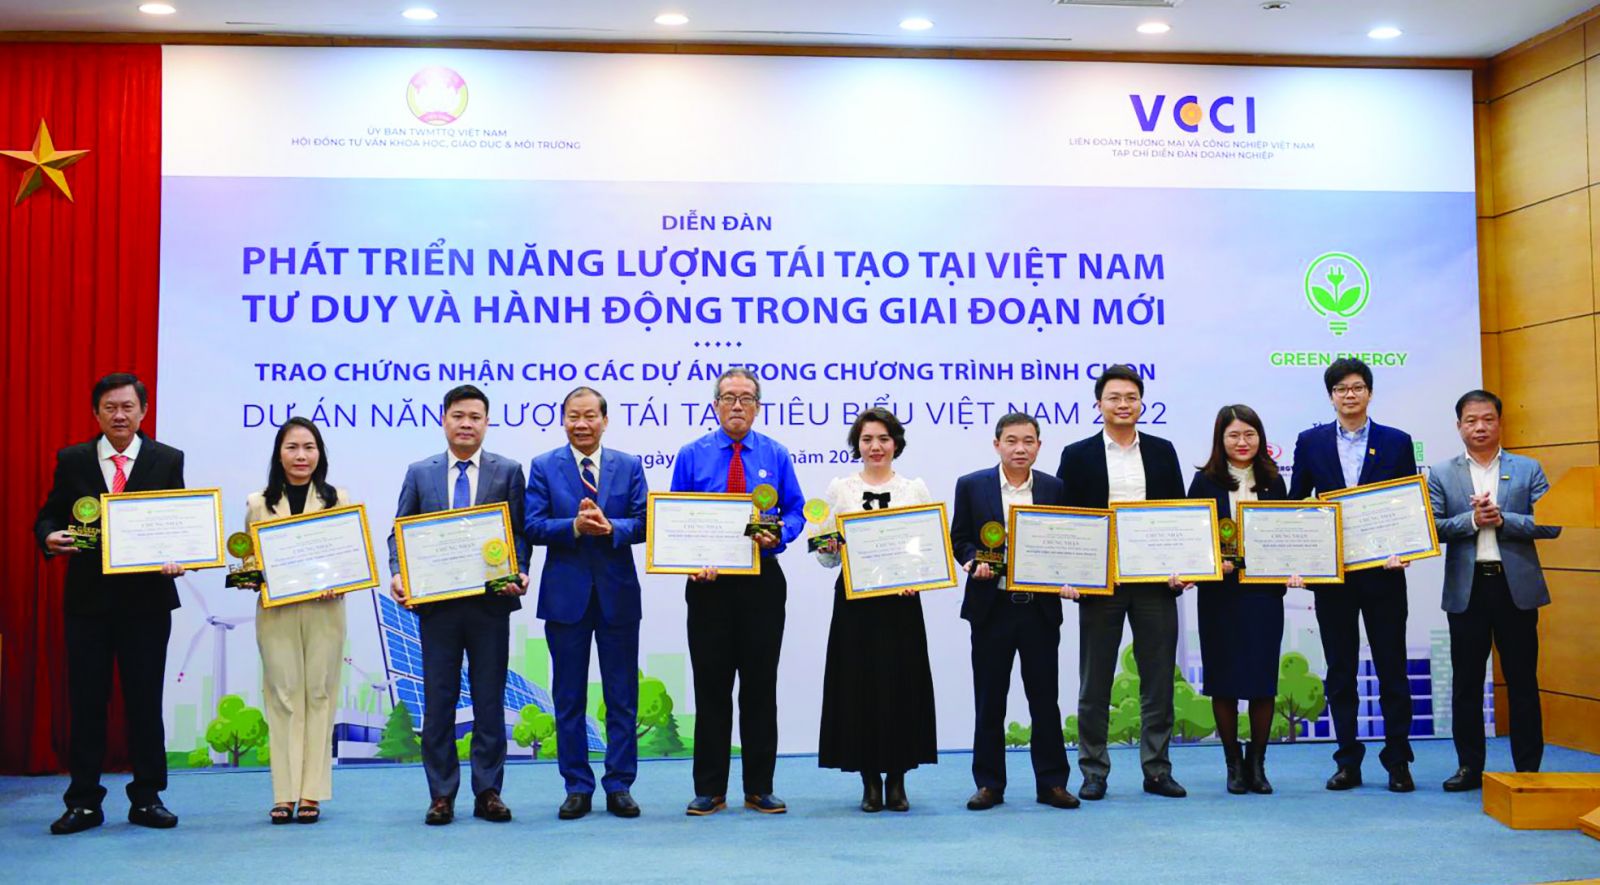  Chương trình Bình chọn Dự án năng lượng tái tạo tiêu biểu Việt Nam do Tạp chí Diễn đàn Doanh nghiệp triển khai.